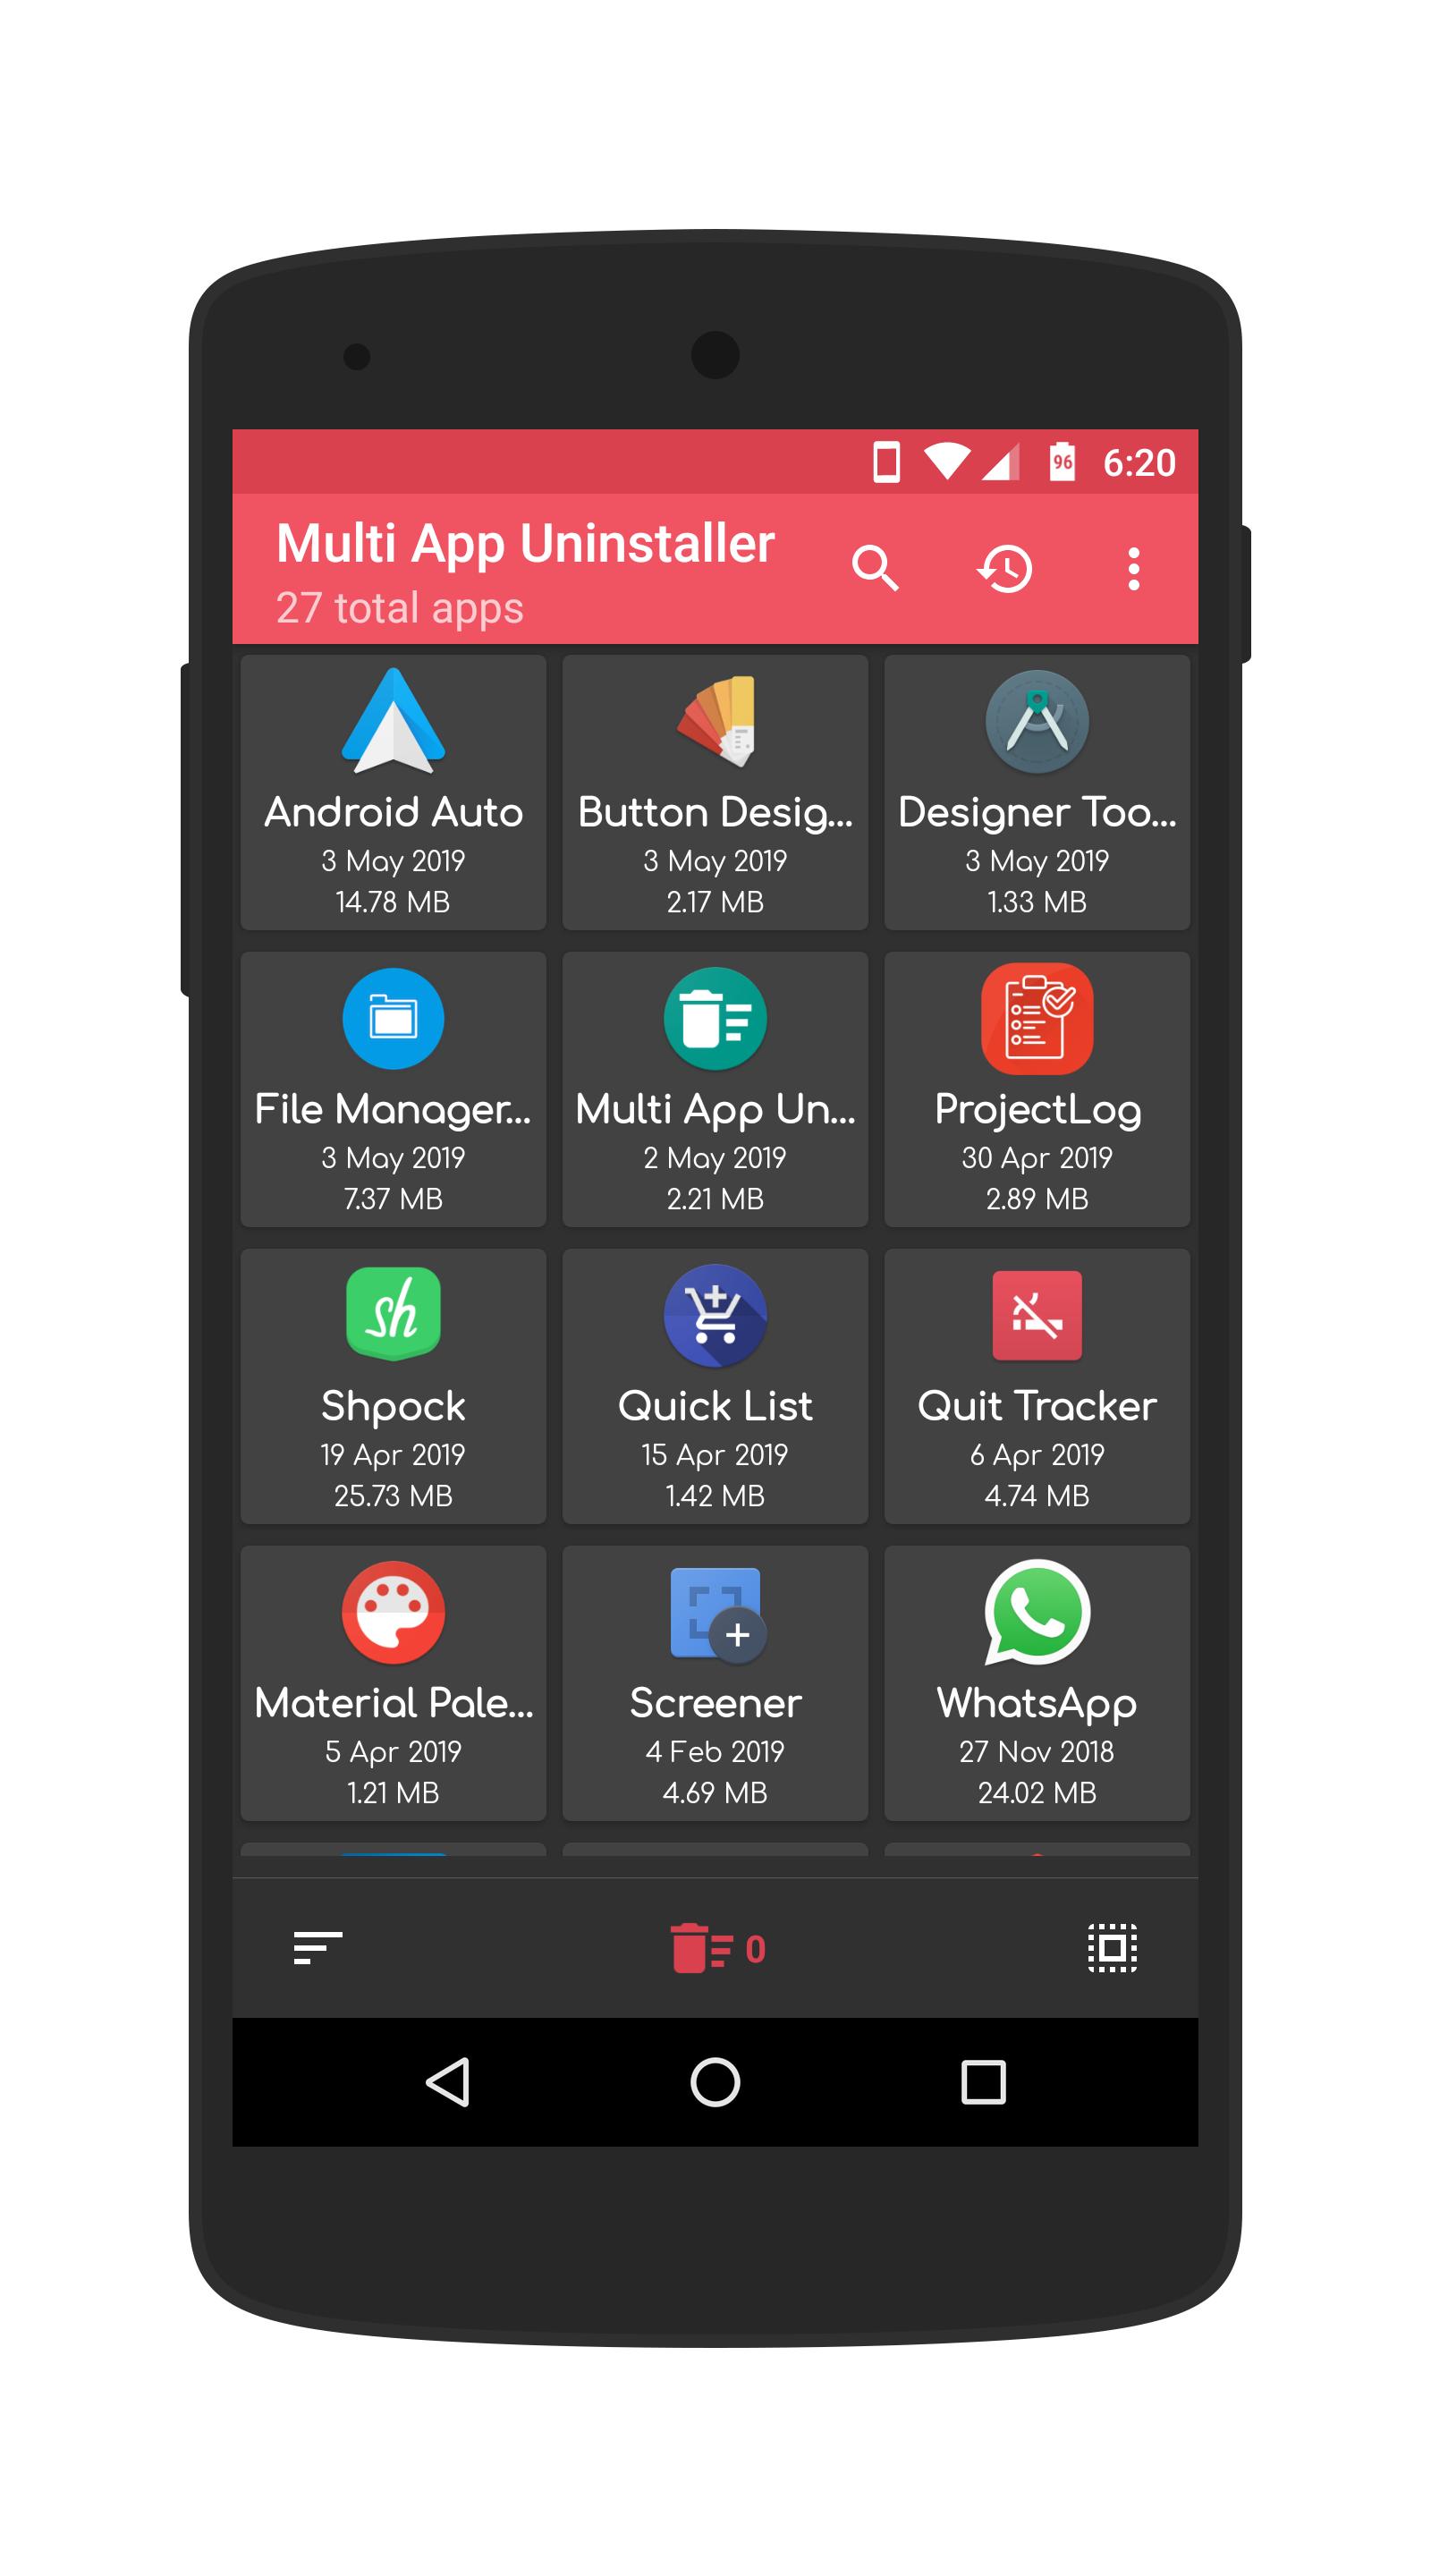 Download do APK de Killapps: Fechar Todos os Apps para Android